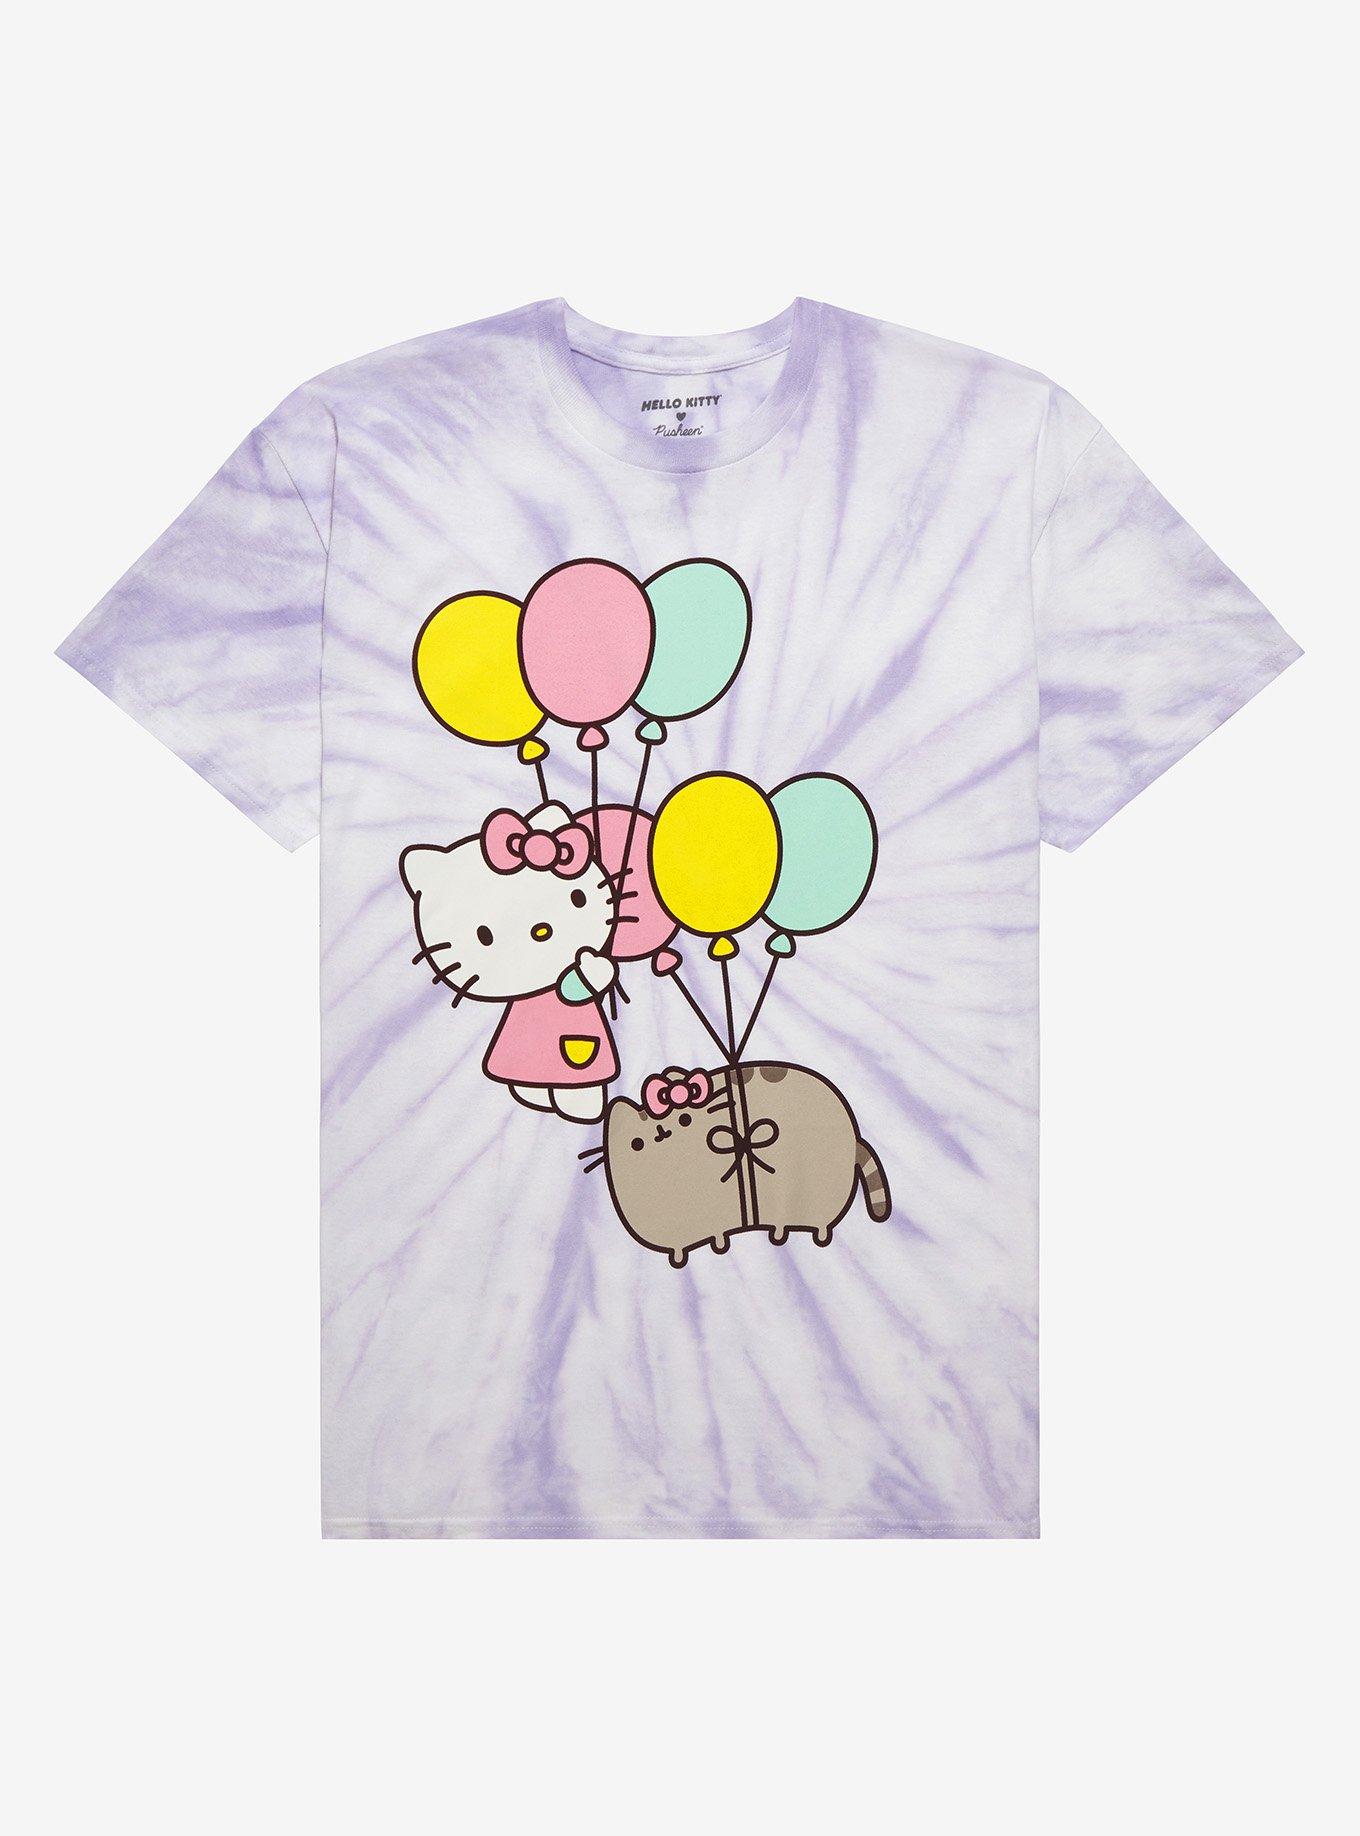 Hello Kitty X Pusheen Duo Boyfriend Fit Girls T-Shirt Plus Size, MULTI, hi-res